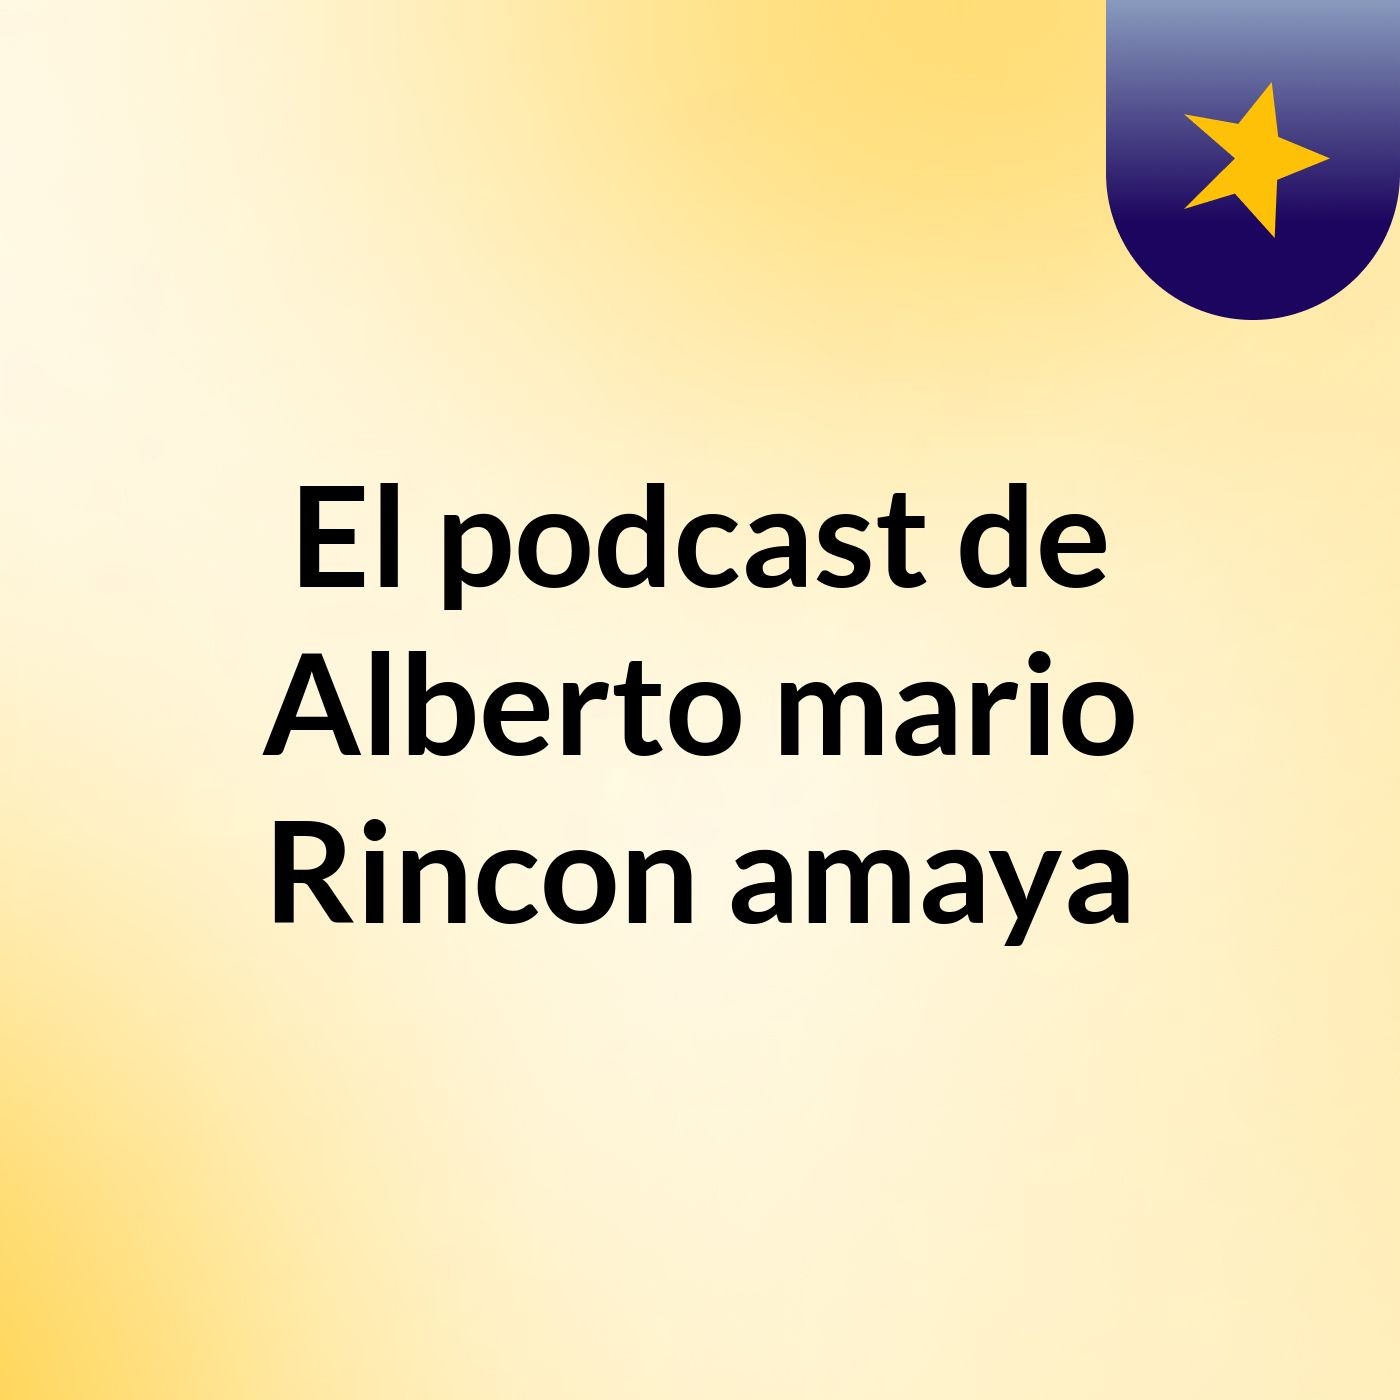 El podcast de Alberto mario Rincon amaya